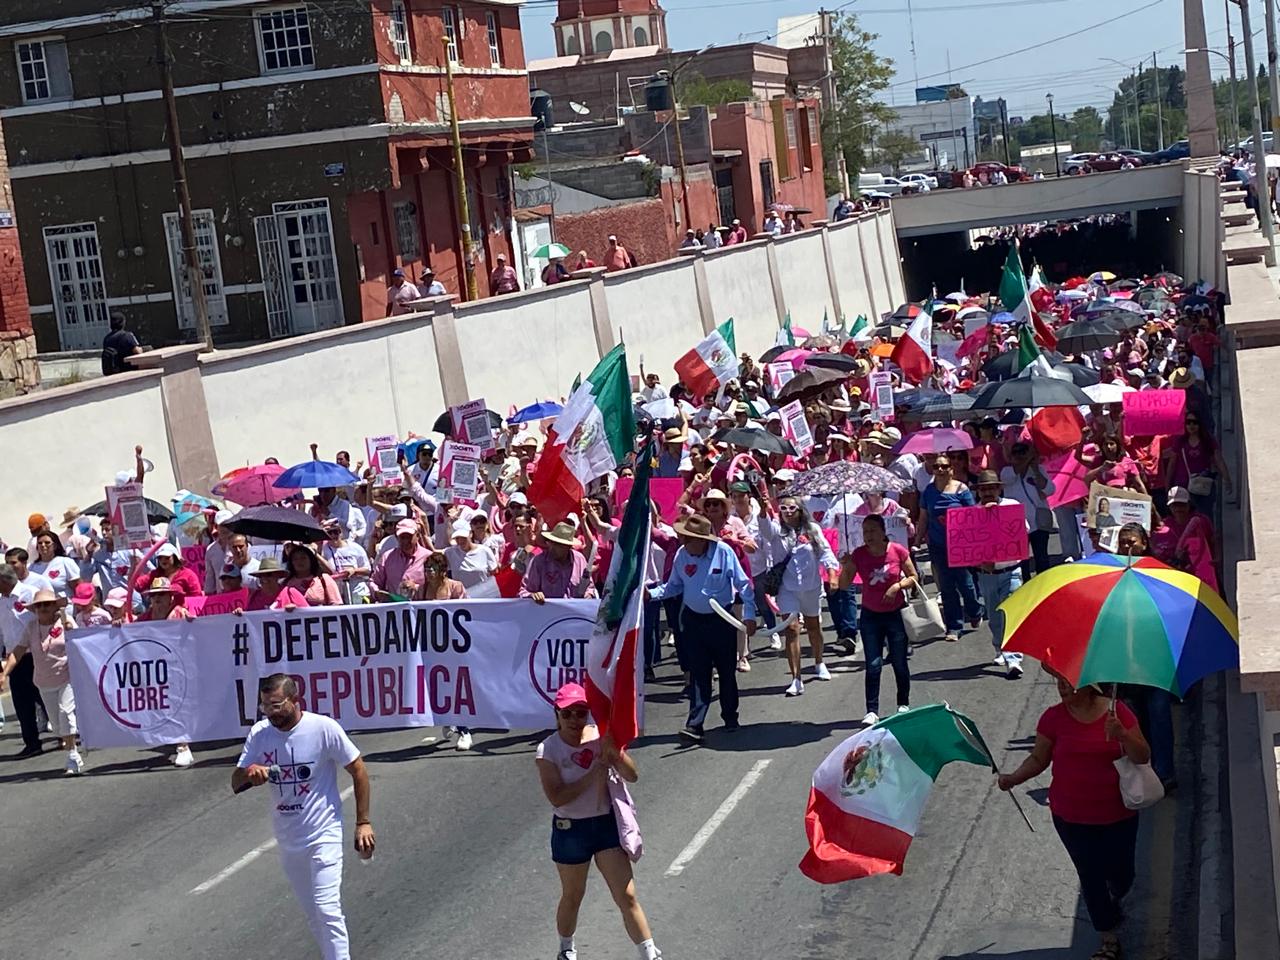 De rosa en defensa de México se expresan ciudadanos